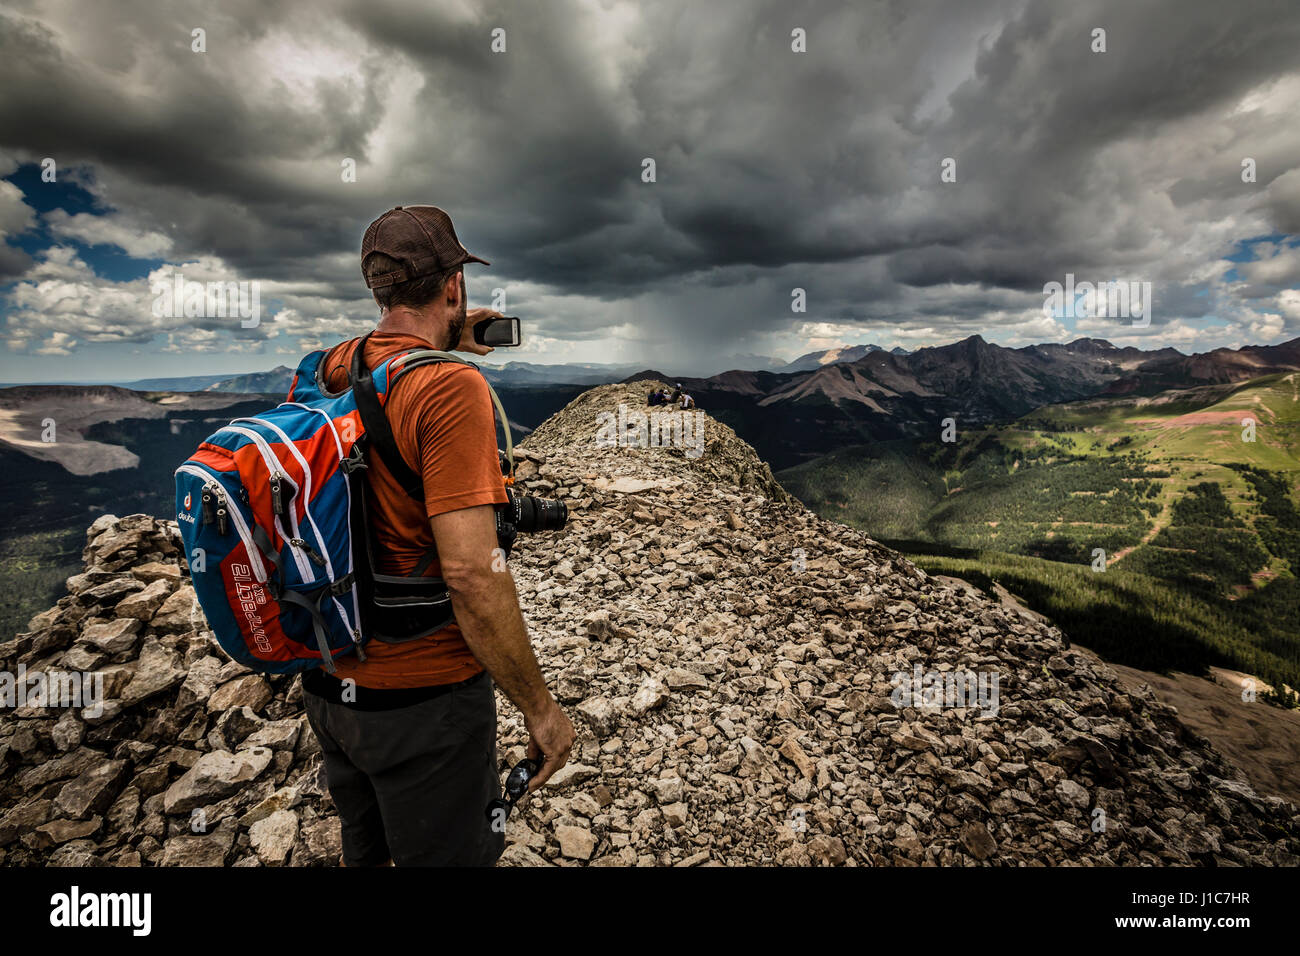 Eric Niestetal prenant une photo avec son iPhone sur le sommet de la montagne, ingénieur au Colorado. Banque D'Images